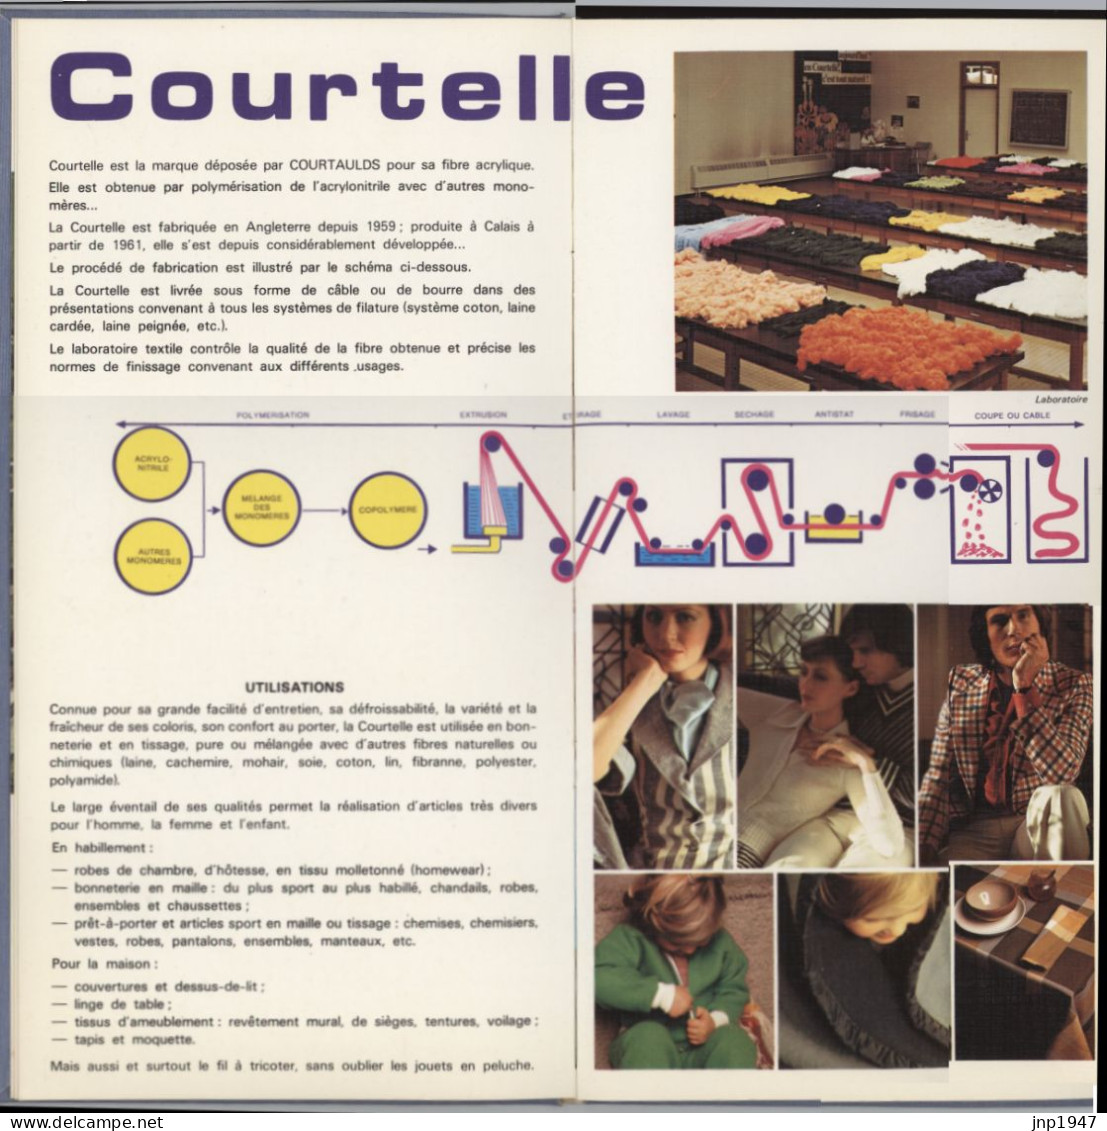 Calais Plaquette Publicitaire Courtaulds 1975 - Picardie - Nord-Pas-de-Calais